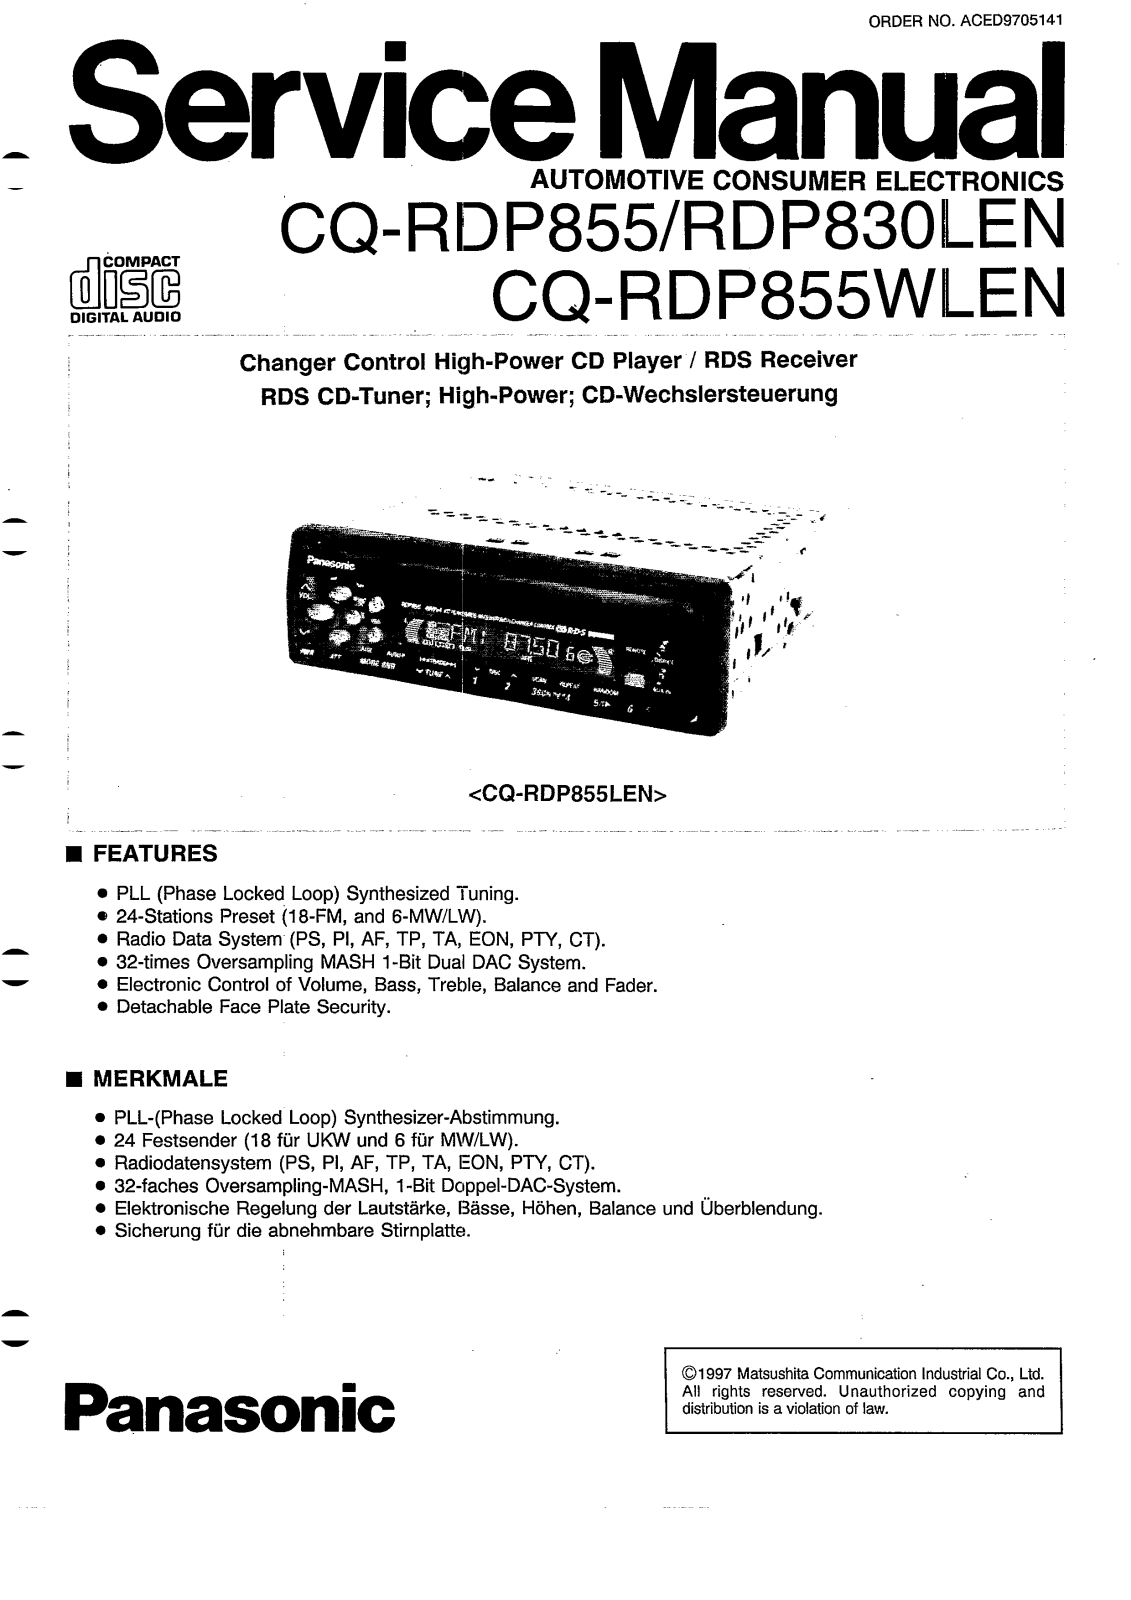 Panasonic CQ-DP855 Service Manual